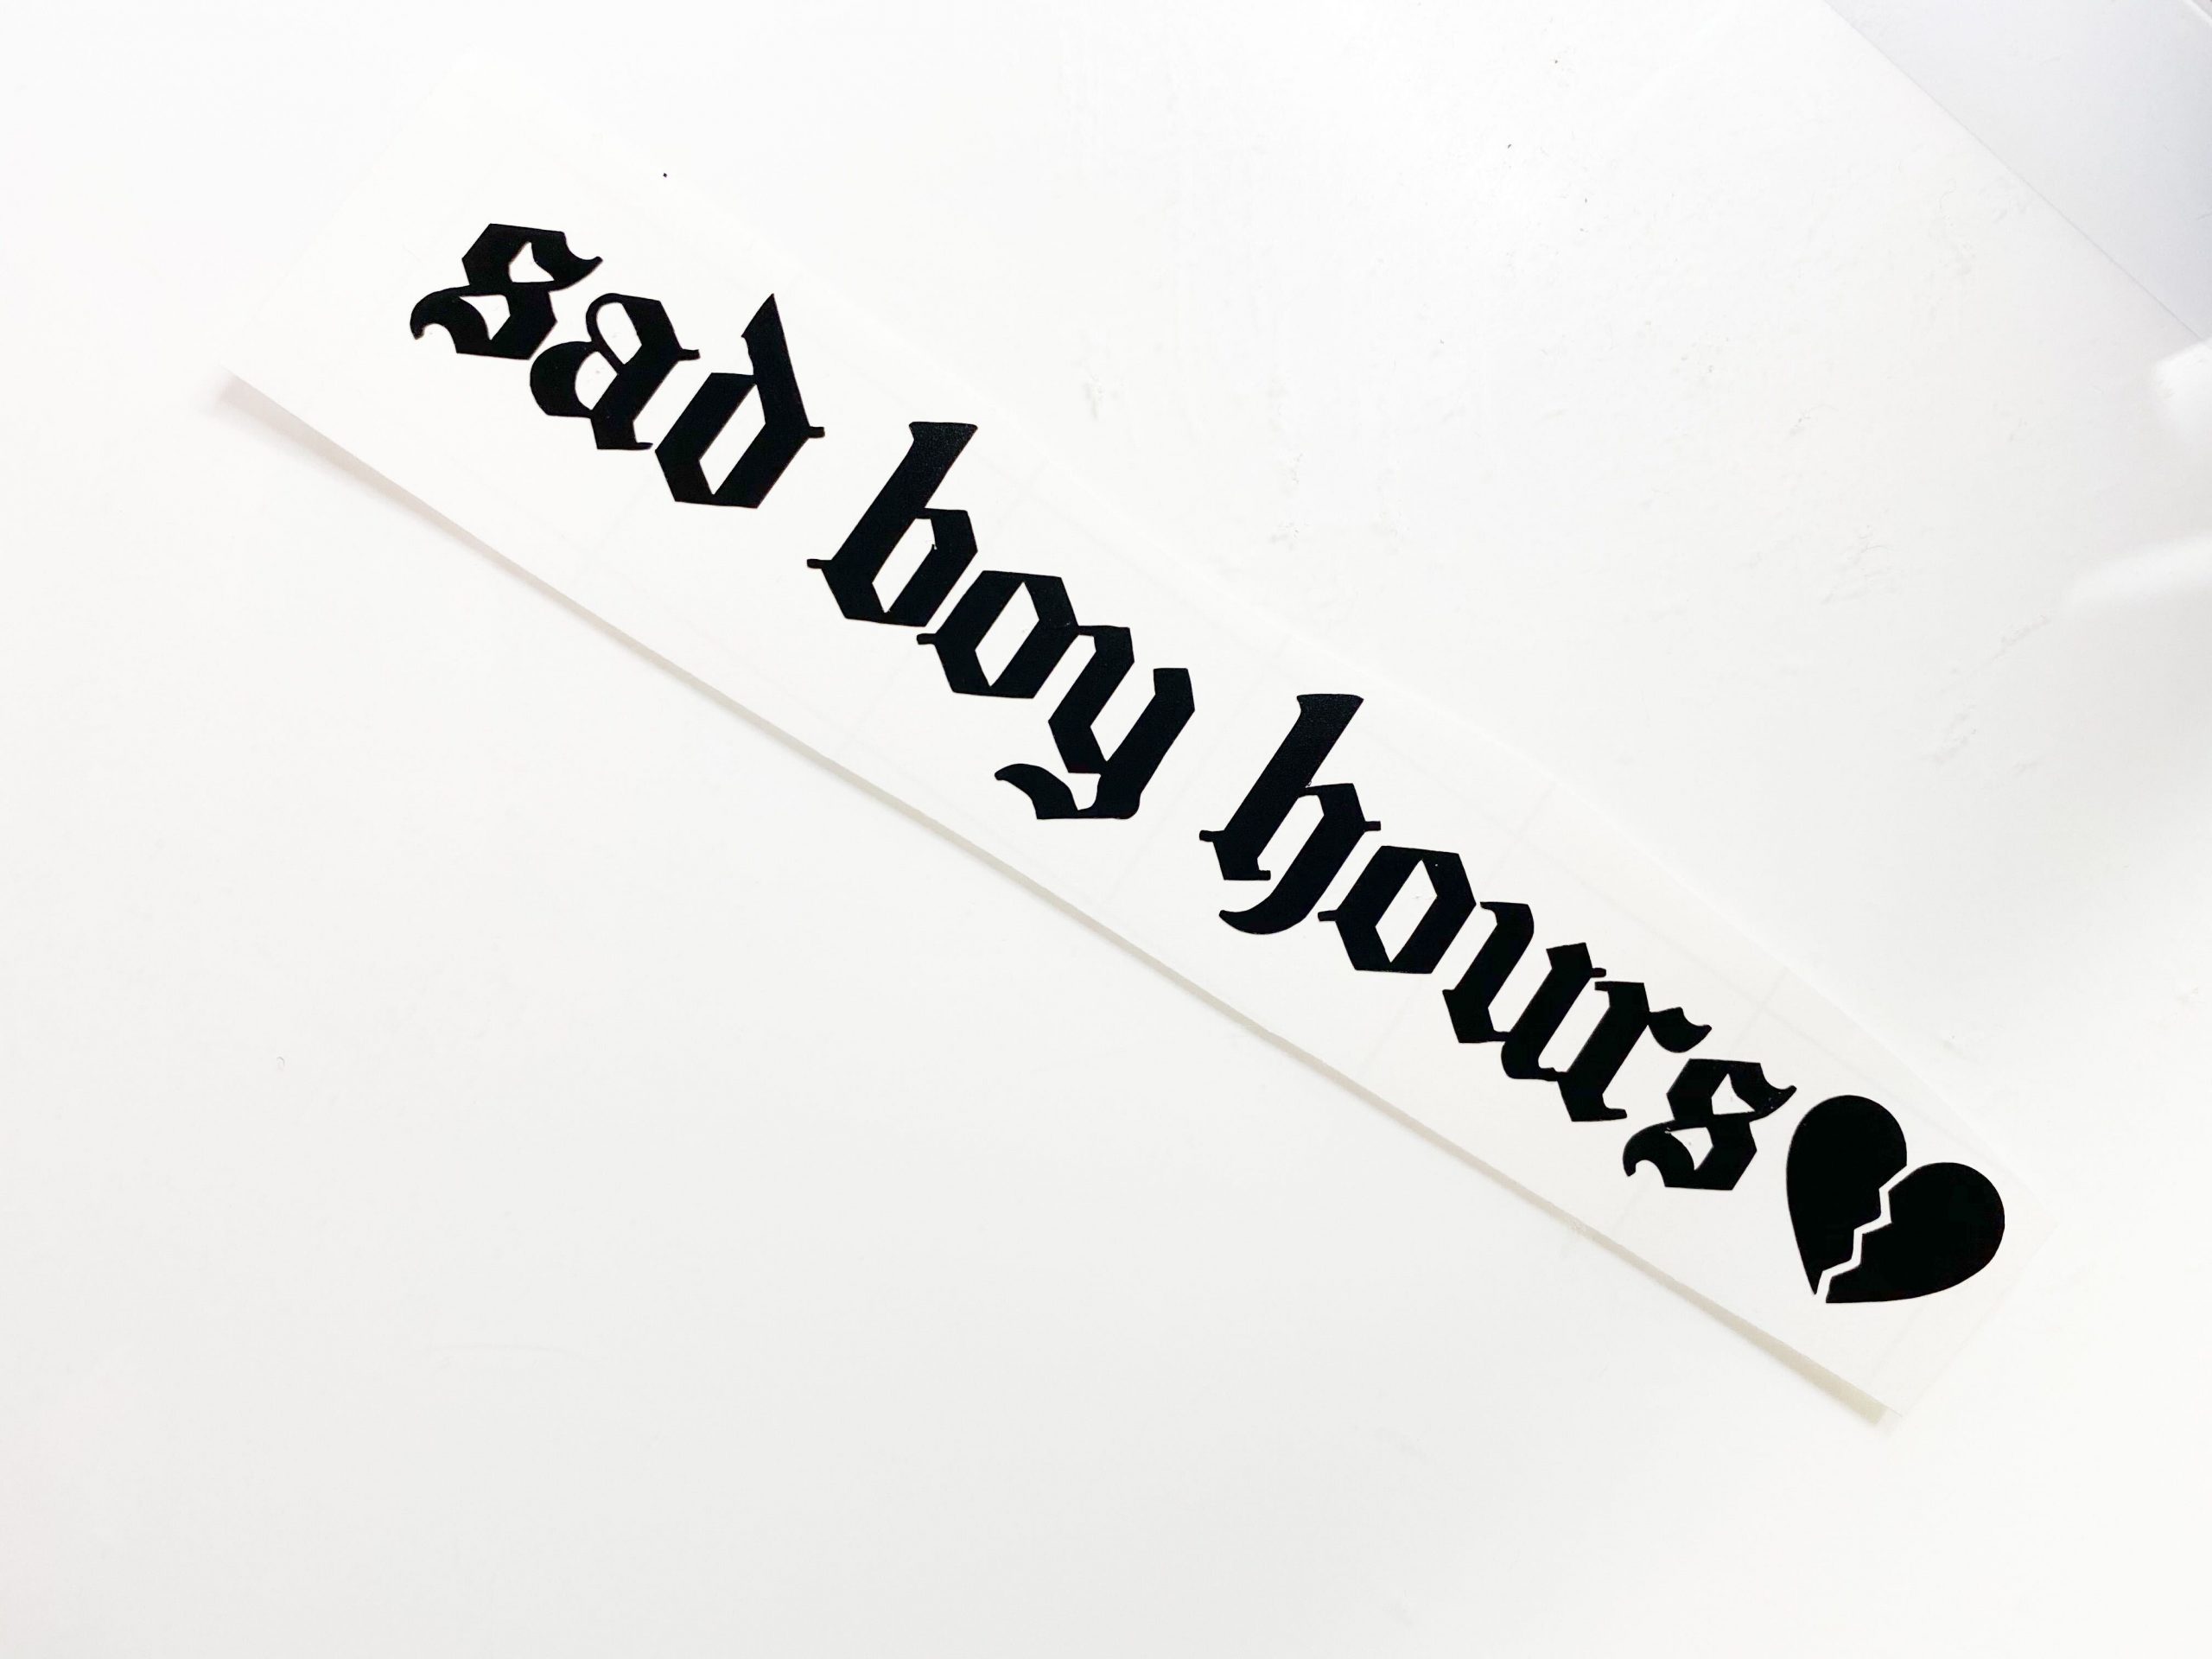 Sad Boy Hours Broken Heart / Rearview Side Objects in Mirror 